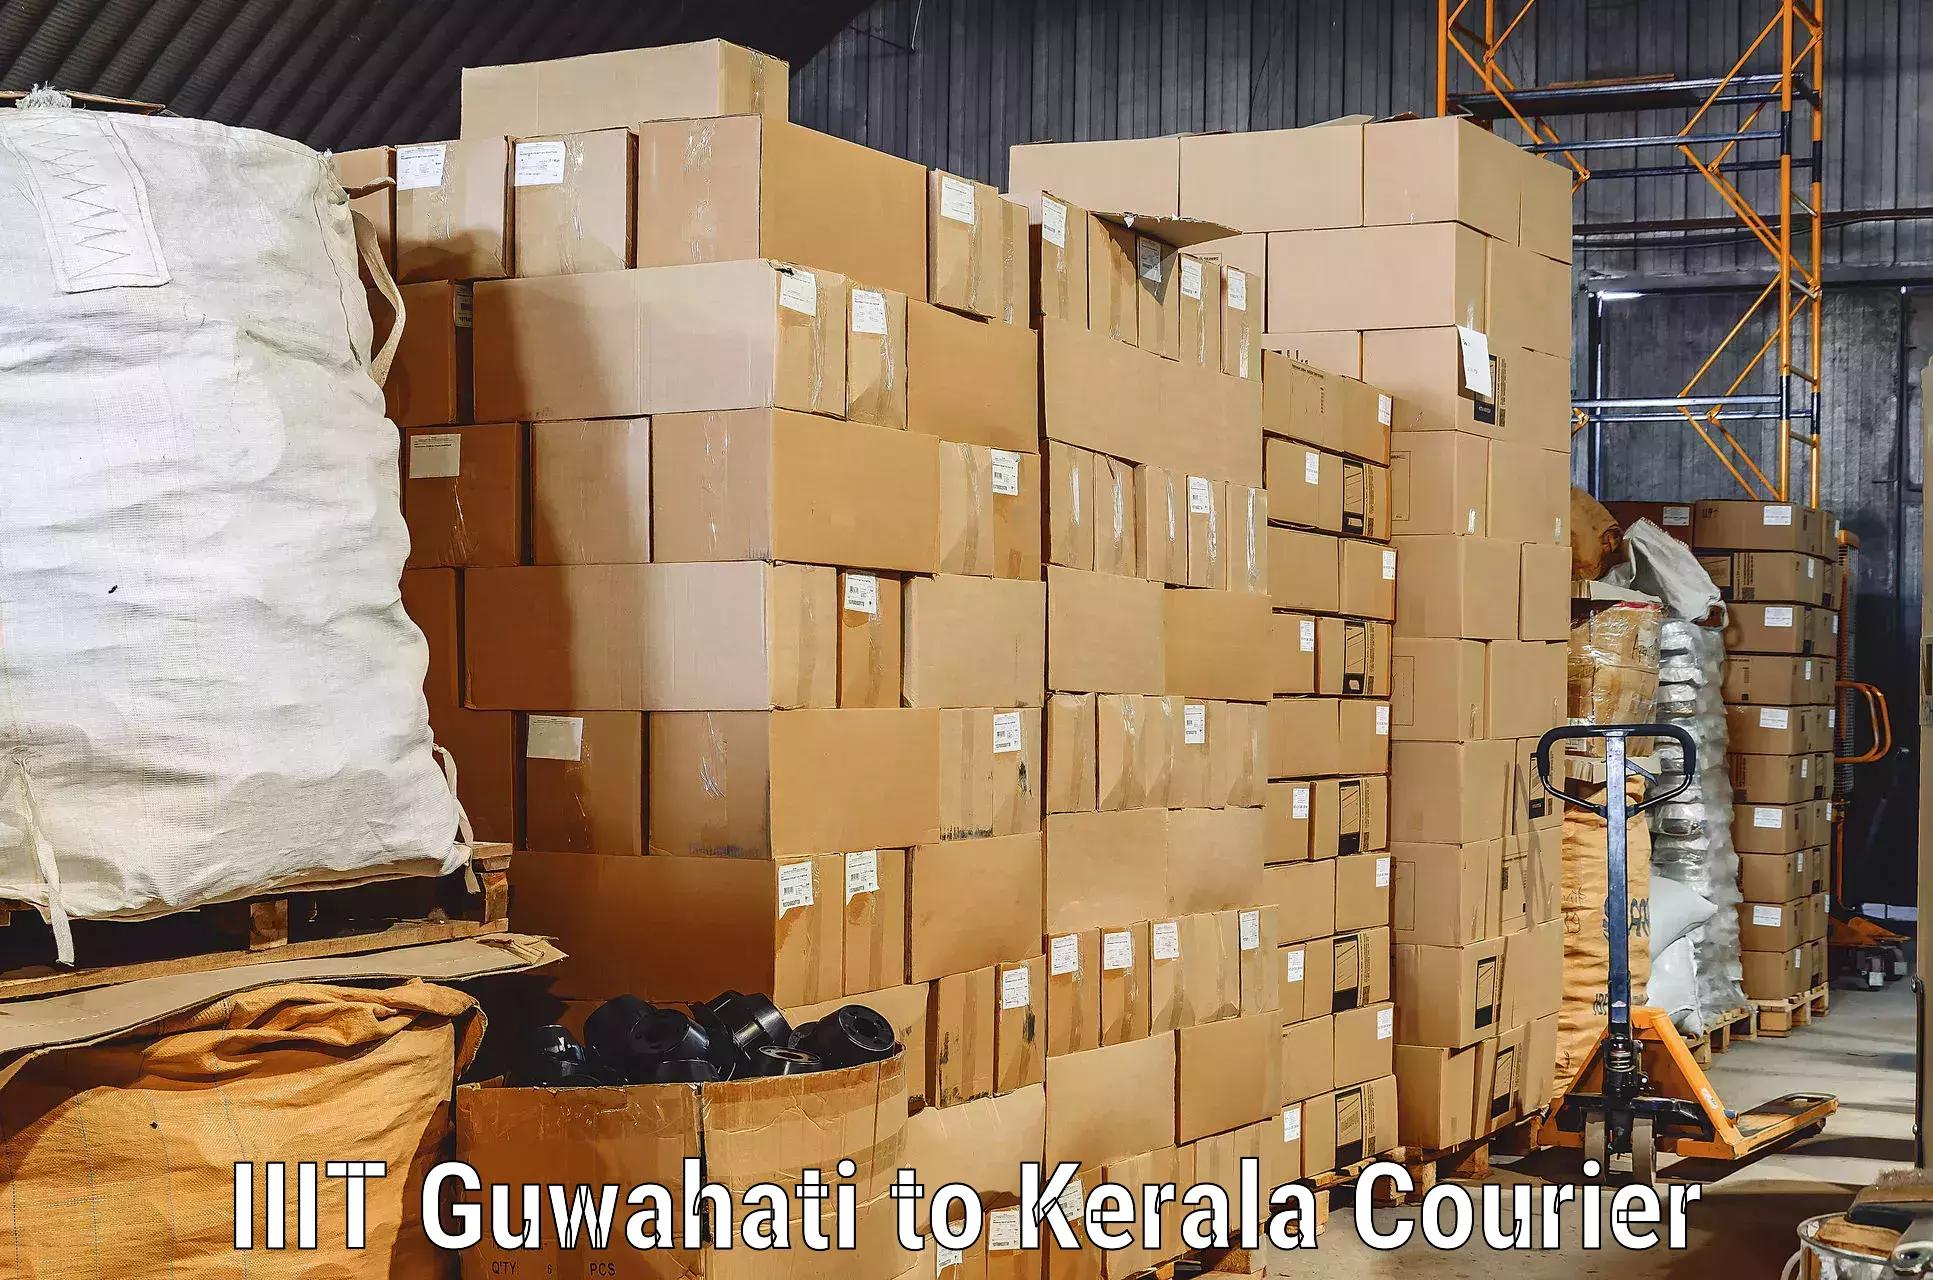 Furniture transport company IIIT Guwahati to Neyyattinkara